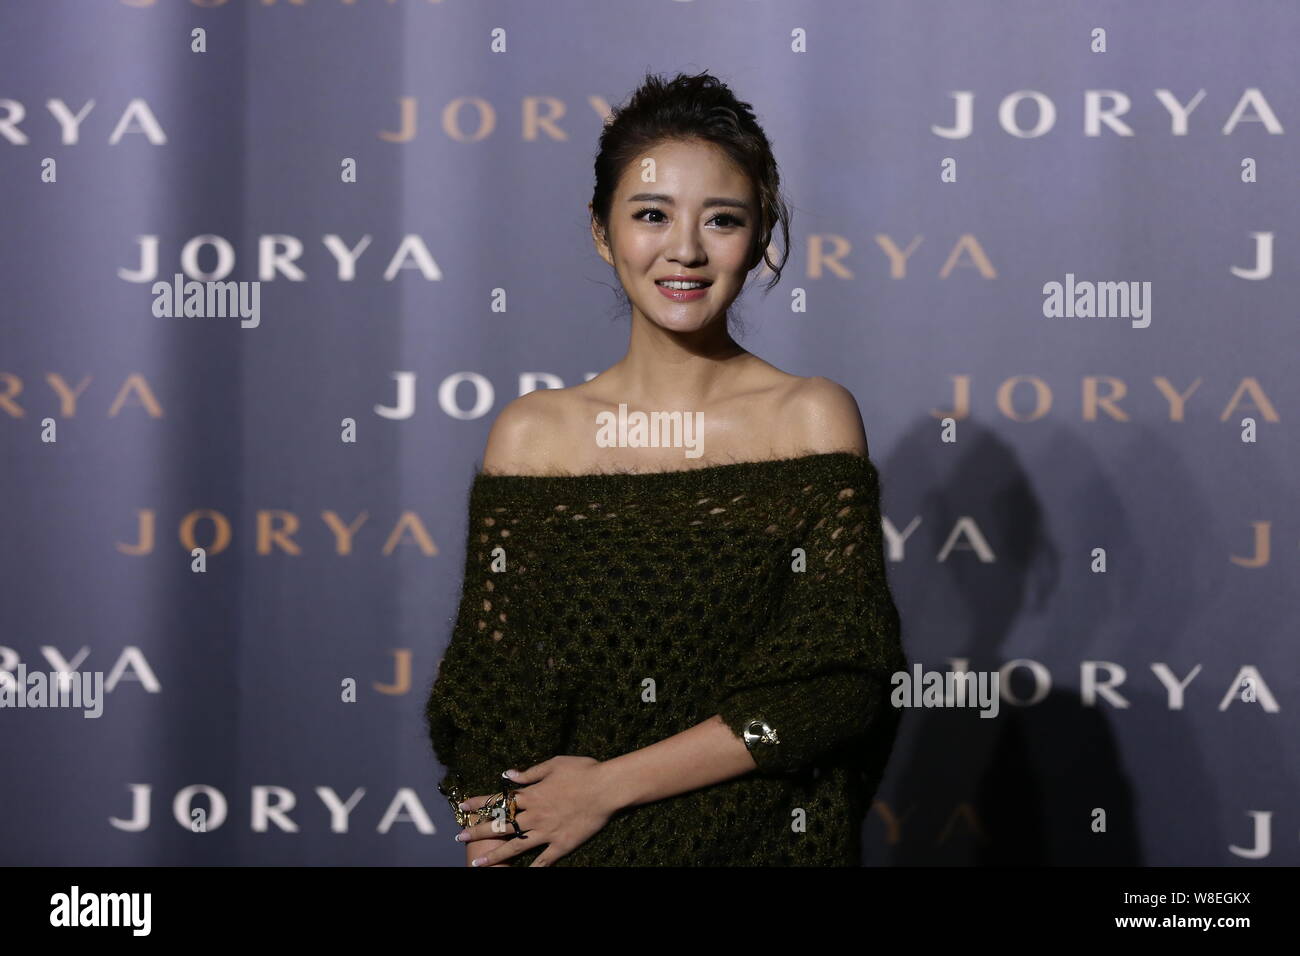 L'actrice taïwanaise Ady une pose comme elle arrive à l'JORYA Fashion 2015 Exposition 'Réflexion' de New York à Shanghai, Chine, 22 mai 2015. Banque D'Images